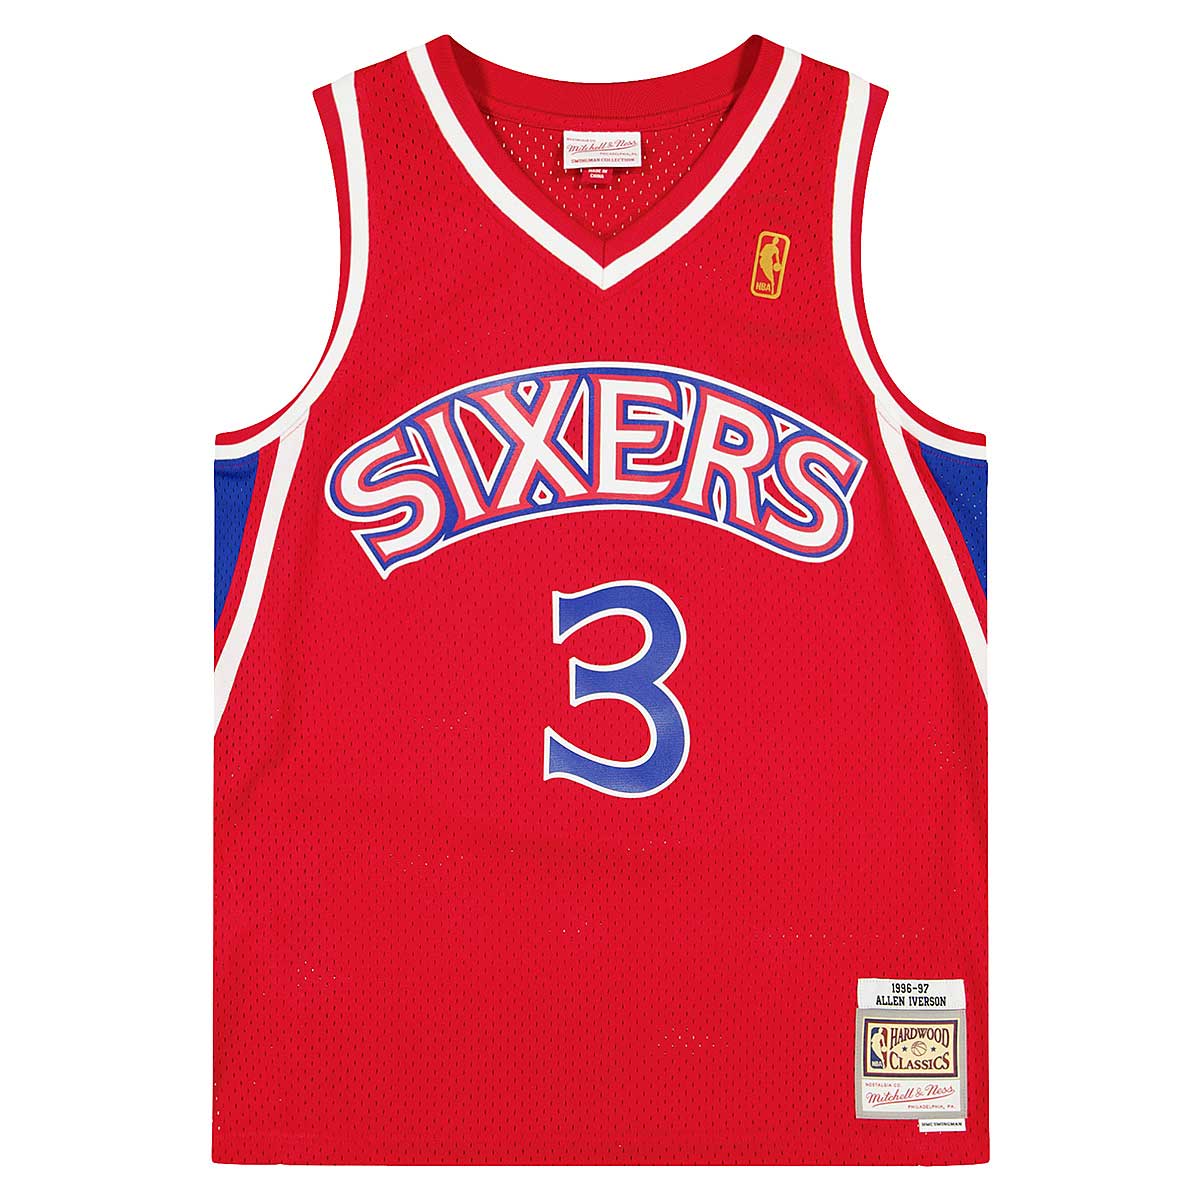  Mitchell & Ness NBA® Hyper Hoops Swingman Jersey 76ers 1996  Allen Iverson Scarlet MD : Sports & Outdoors